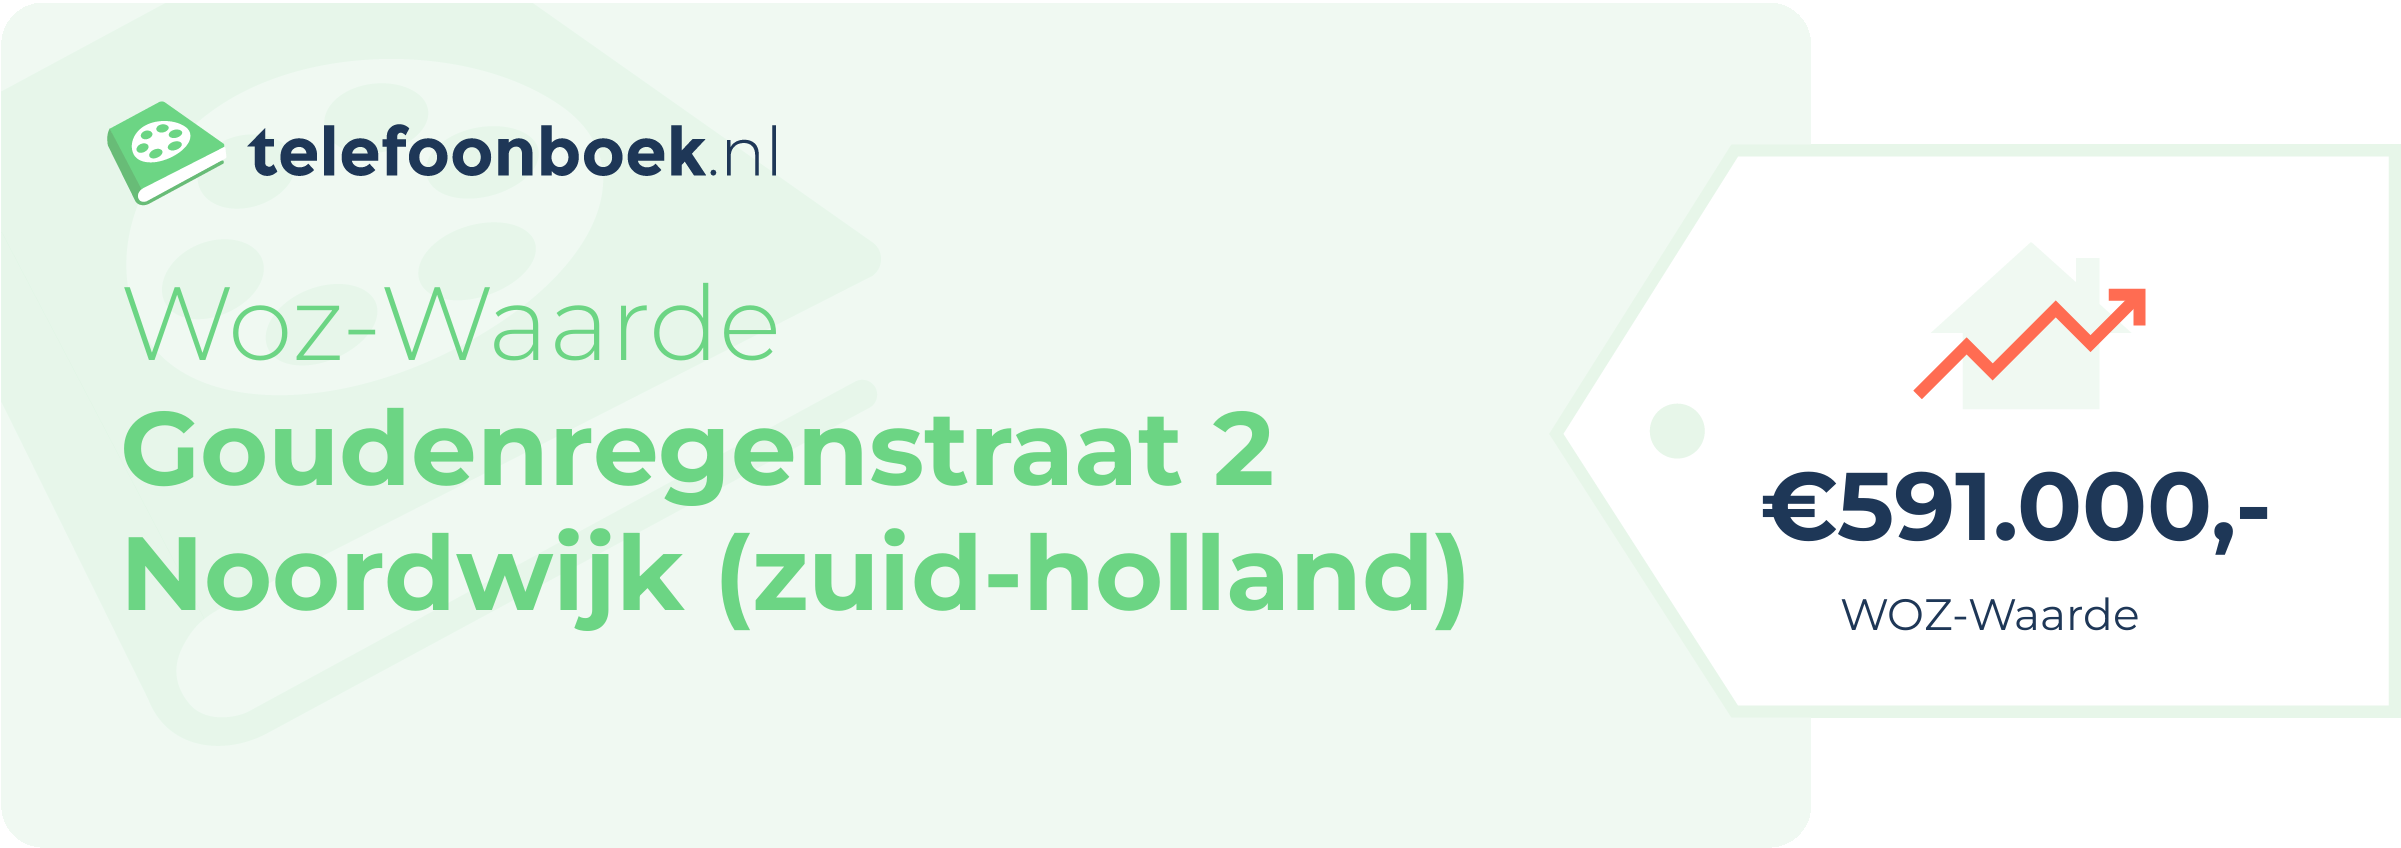 WOZ-waarde Goudenregenstraat 2 Noordwijk (Zuid-Holland)